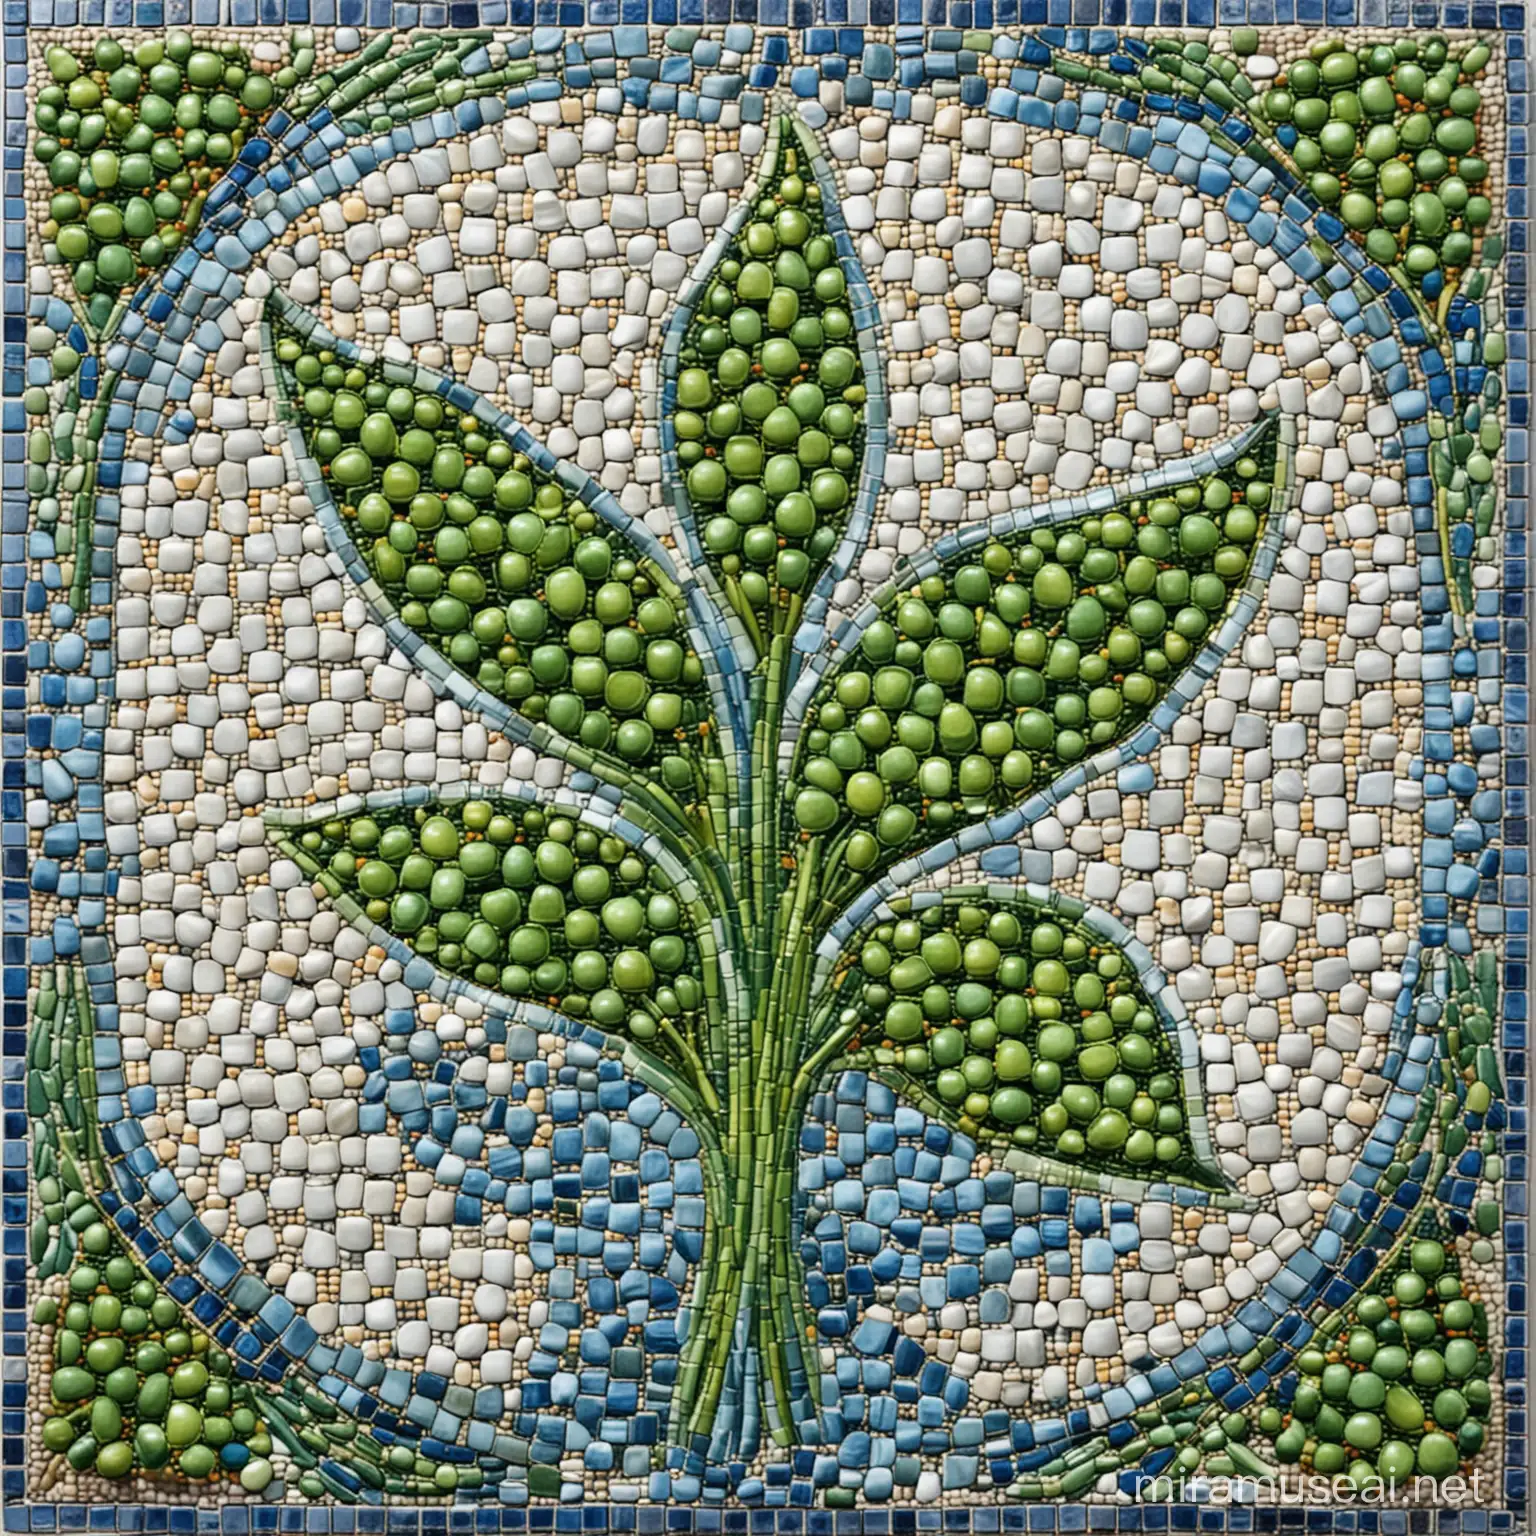 这张图片展示了一幅马赛克艺术作品，主题是绿色的豌豆。画面由众多小块不同颜色和形状的瓷砖组成，巧妙地排列成豌豆荚的形状。豌豆荚呈现为鲜艳的红色，里面装满了绿色的豌豆，豌豆表面光滑，看起来非常新鲜诱人。
在豌豆荚的周围，分布着几片绿色的叶子，叶子大小不一，为整幅作品增添了自然的气息。背景则是由蓝色、白色和灰色的小瓷砖组成的复杂图案，与前景的豌豆荚形成了鲜明的对比，使得整个作品更加生动。
这幅马赛克艺术作品色彩鲜明，细节丰富，每一块瓷砖都经过精心挑选和摆放，以呈现出完美的视觉效果。它不仅展示了艺术家的巧思妙想和精湛技艺，也带给我们视觉上的享受和艺术上的启迪。
